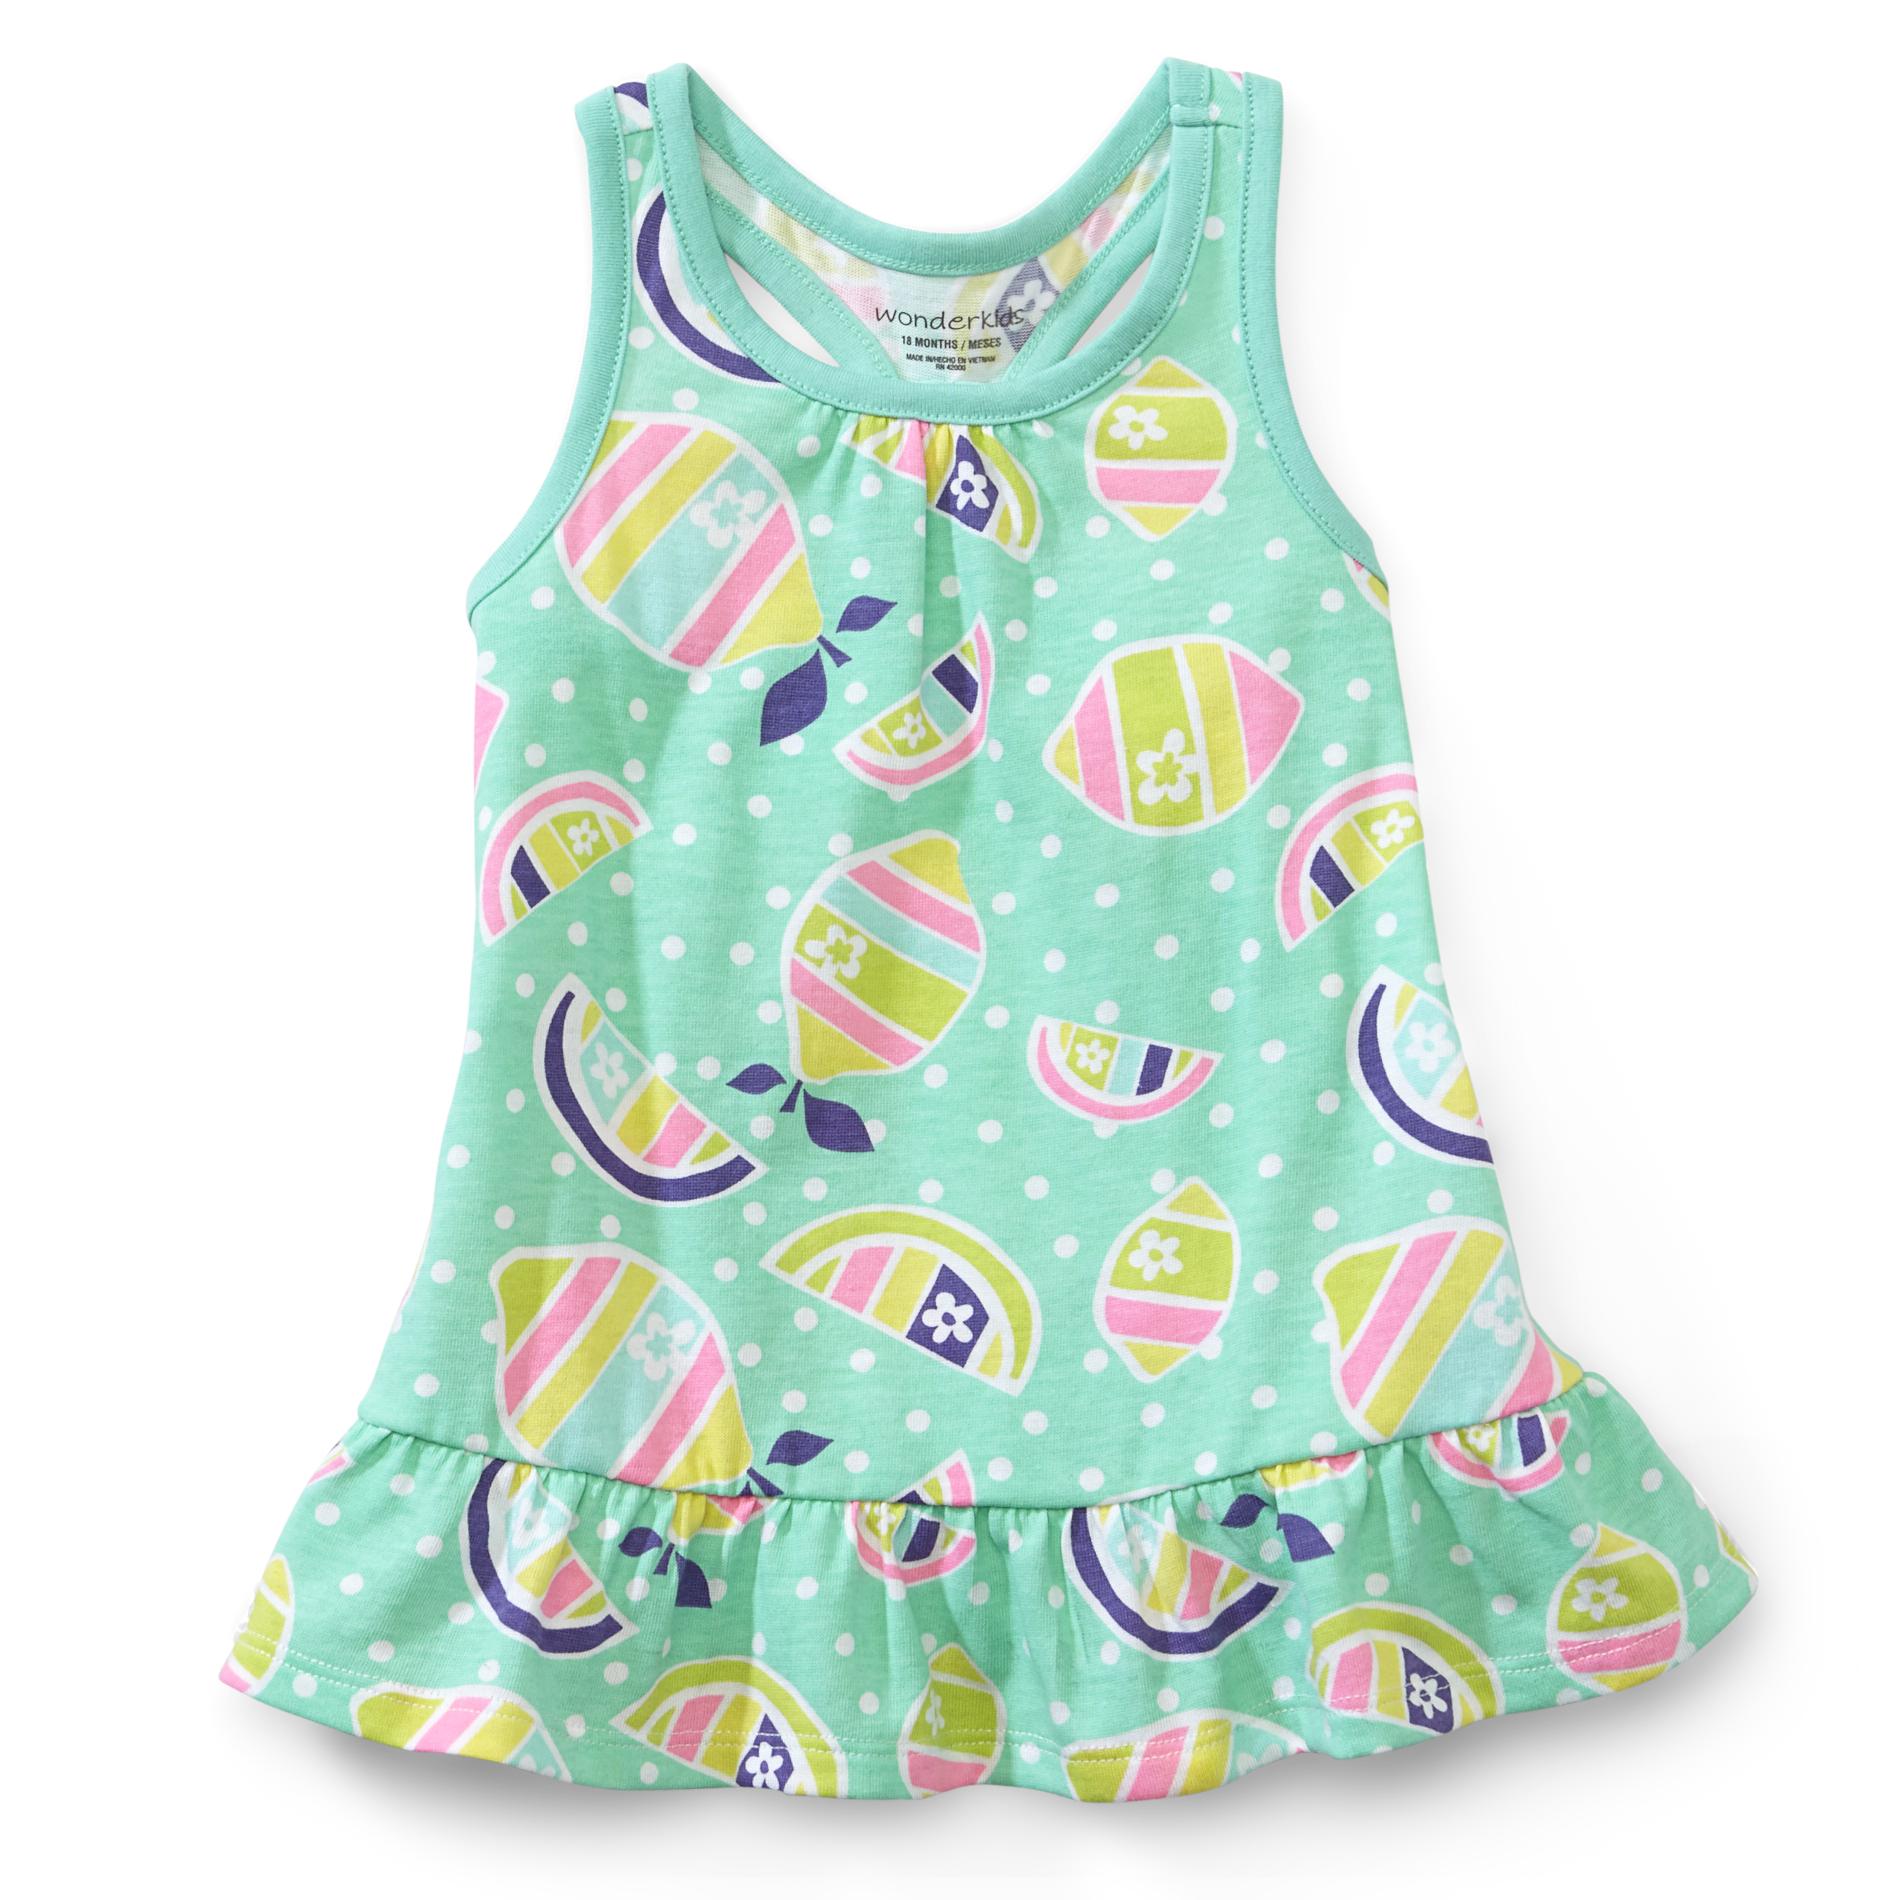 WonderKids Infant & Toddler Girl's Racerback Tunic Top - Lemon